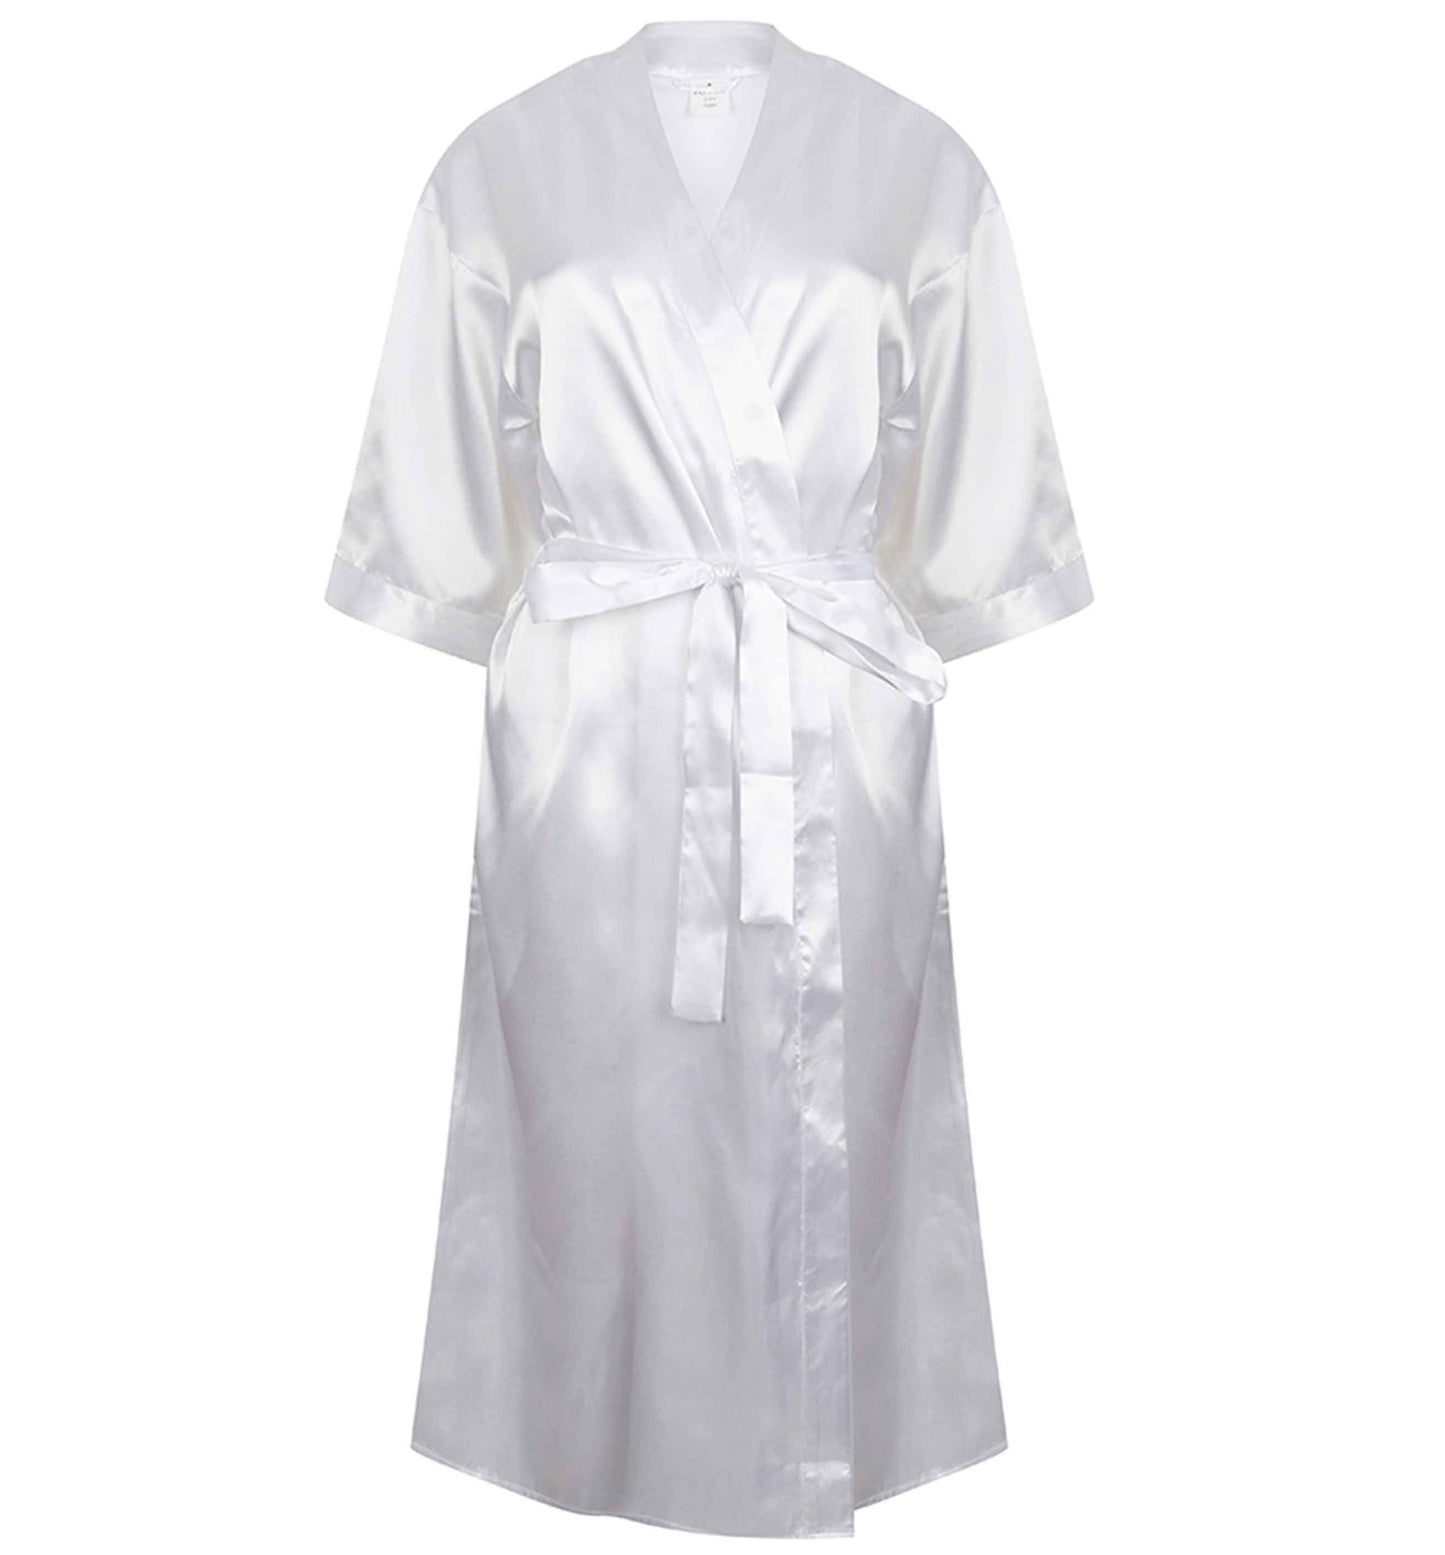 They said I do | 8-18 | Kimono style satin robe | Ladies dressing gown